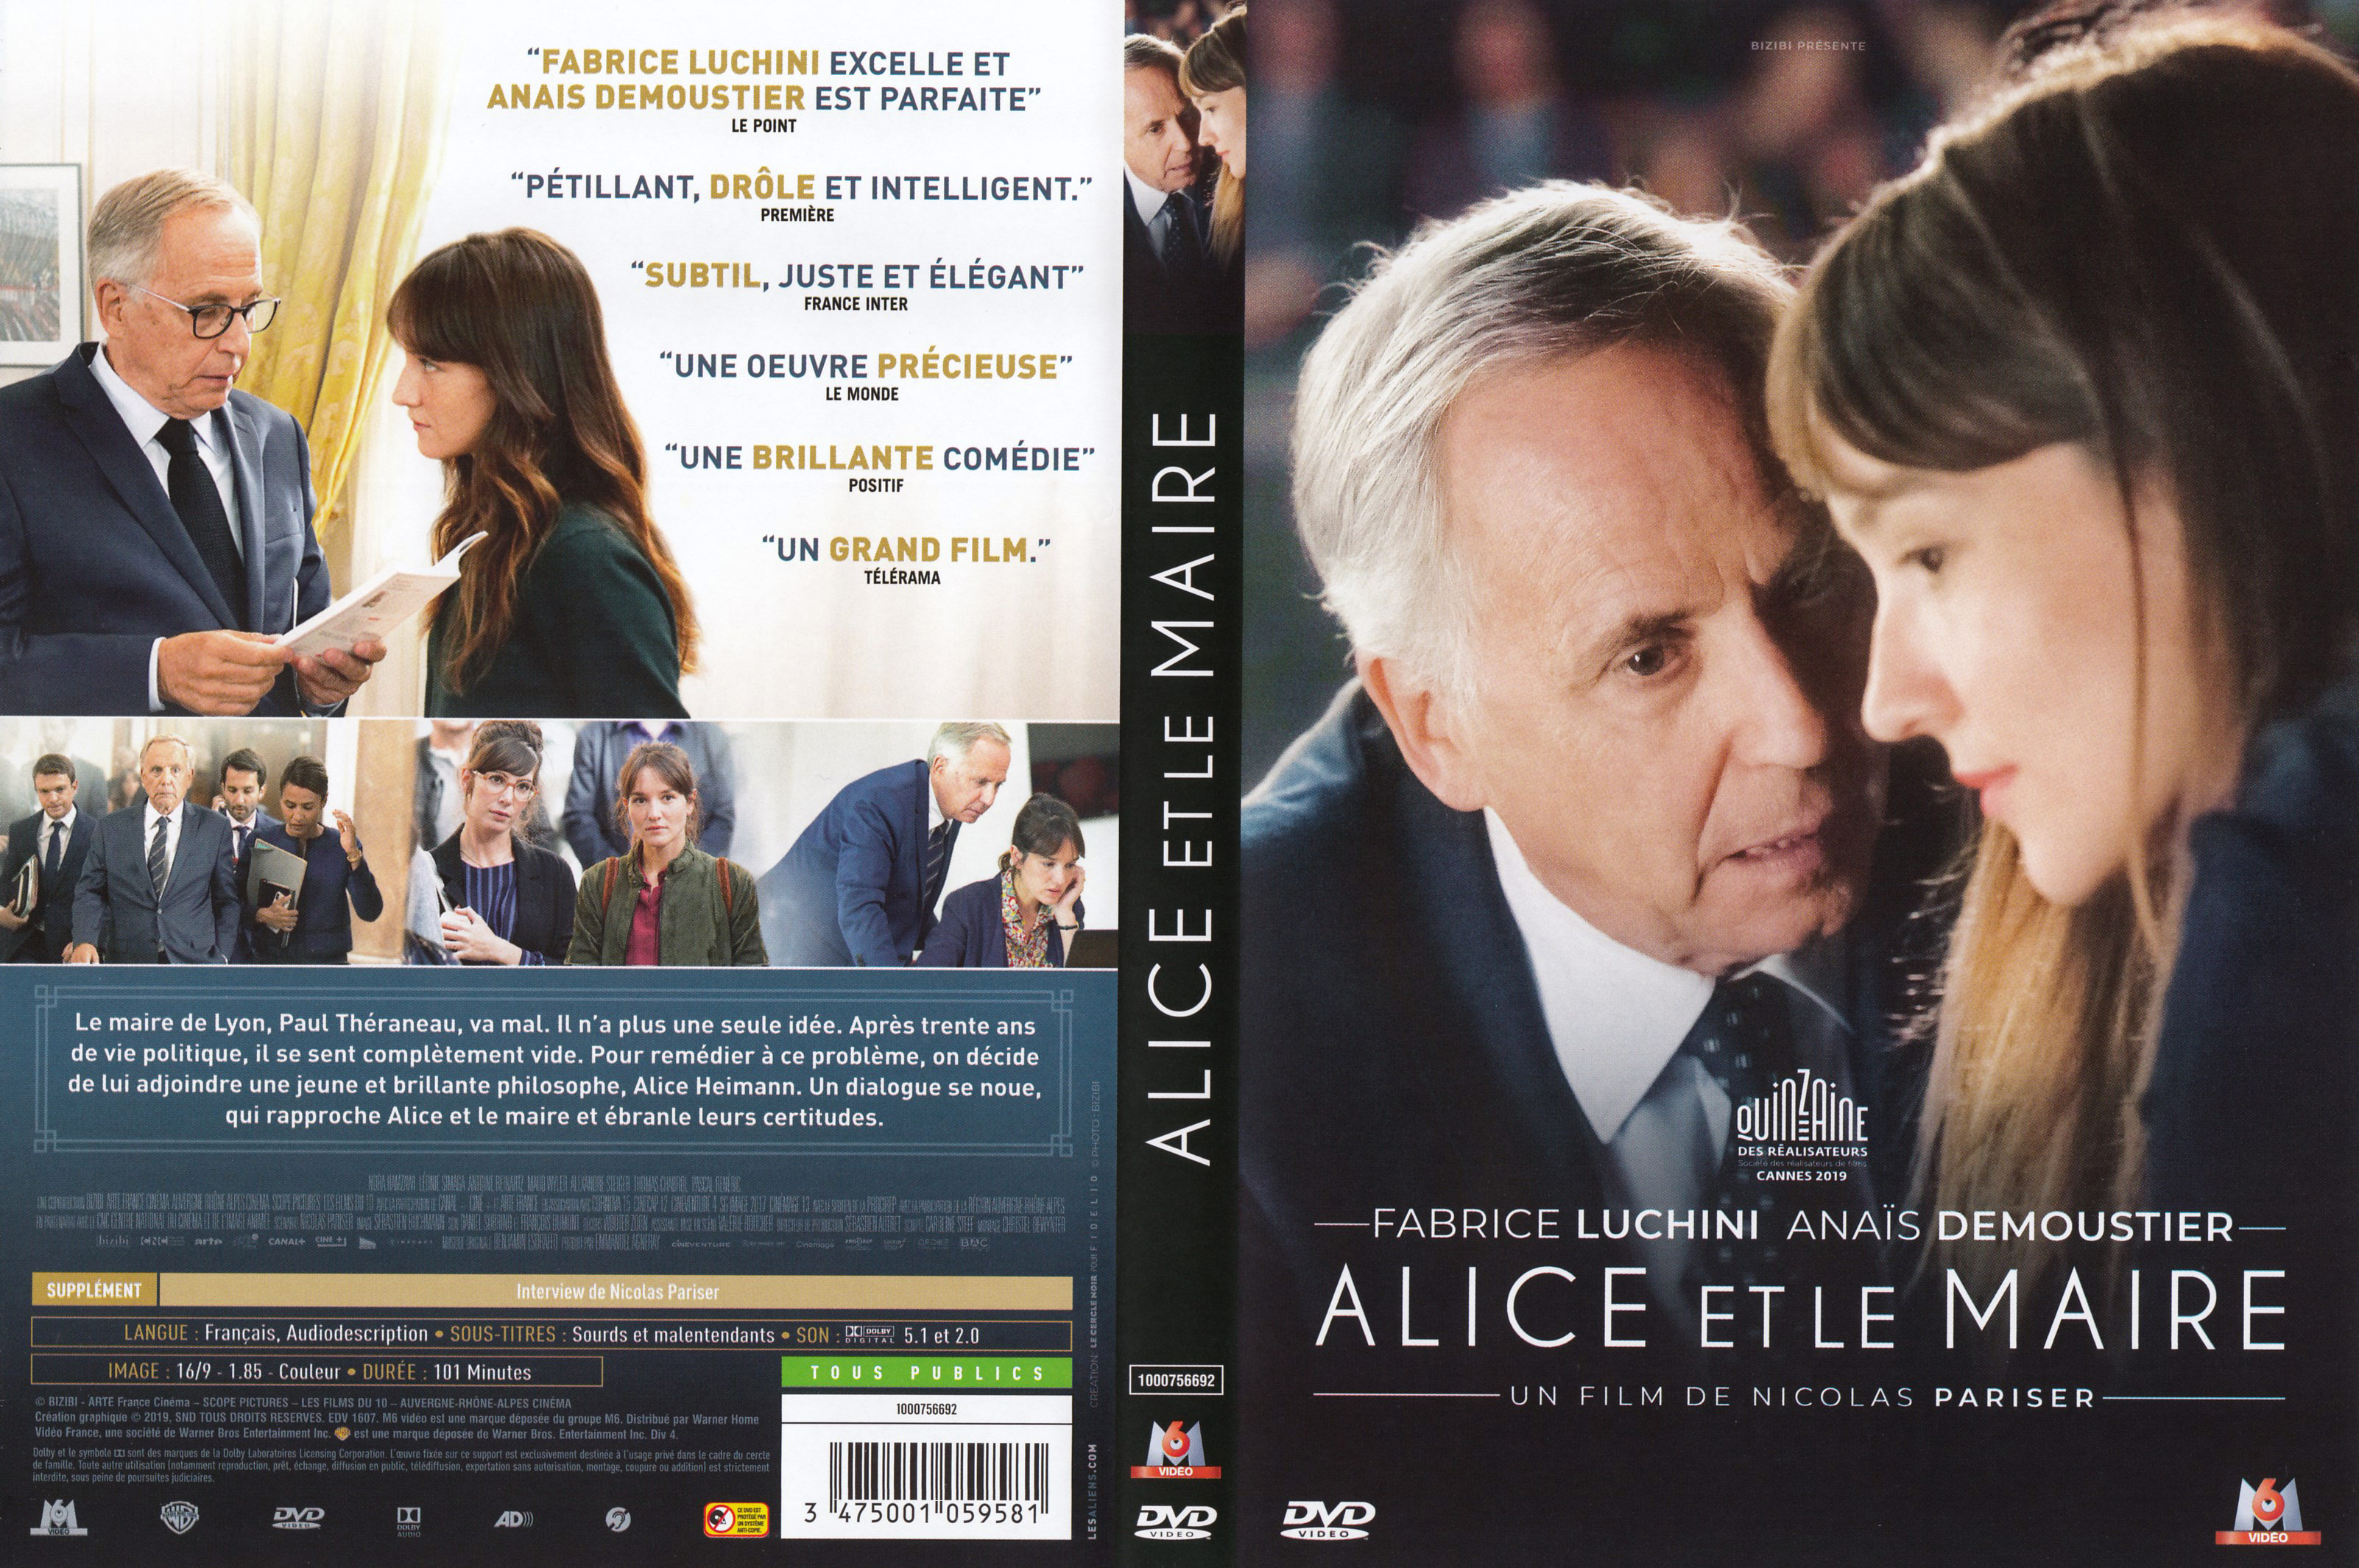 Jaquette DVD Alice et le maire